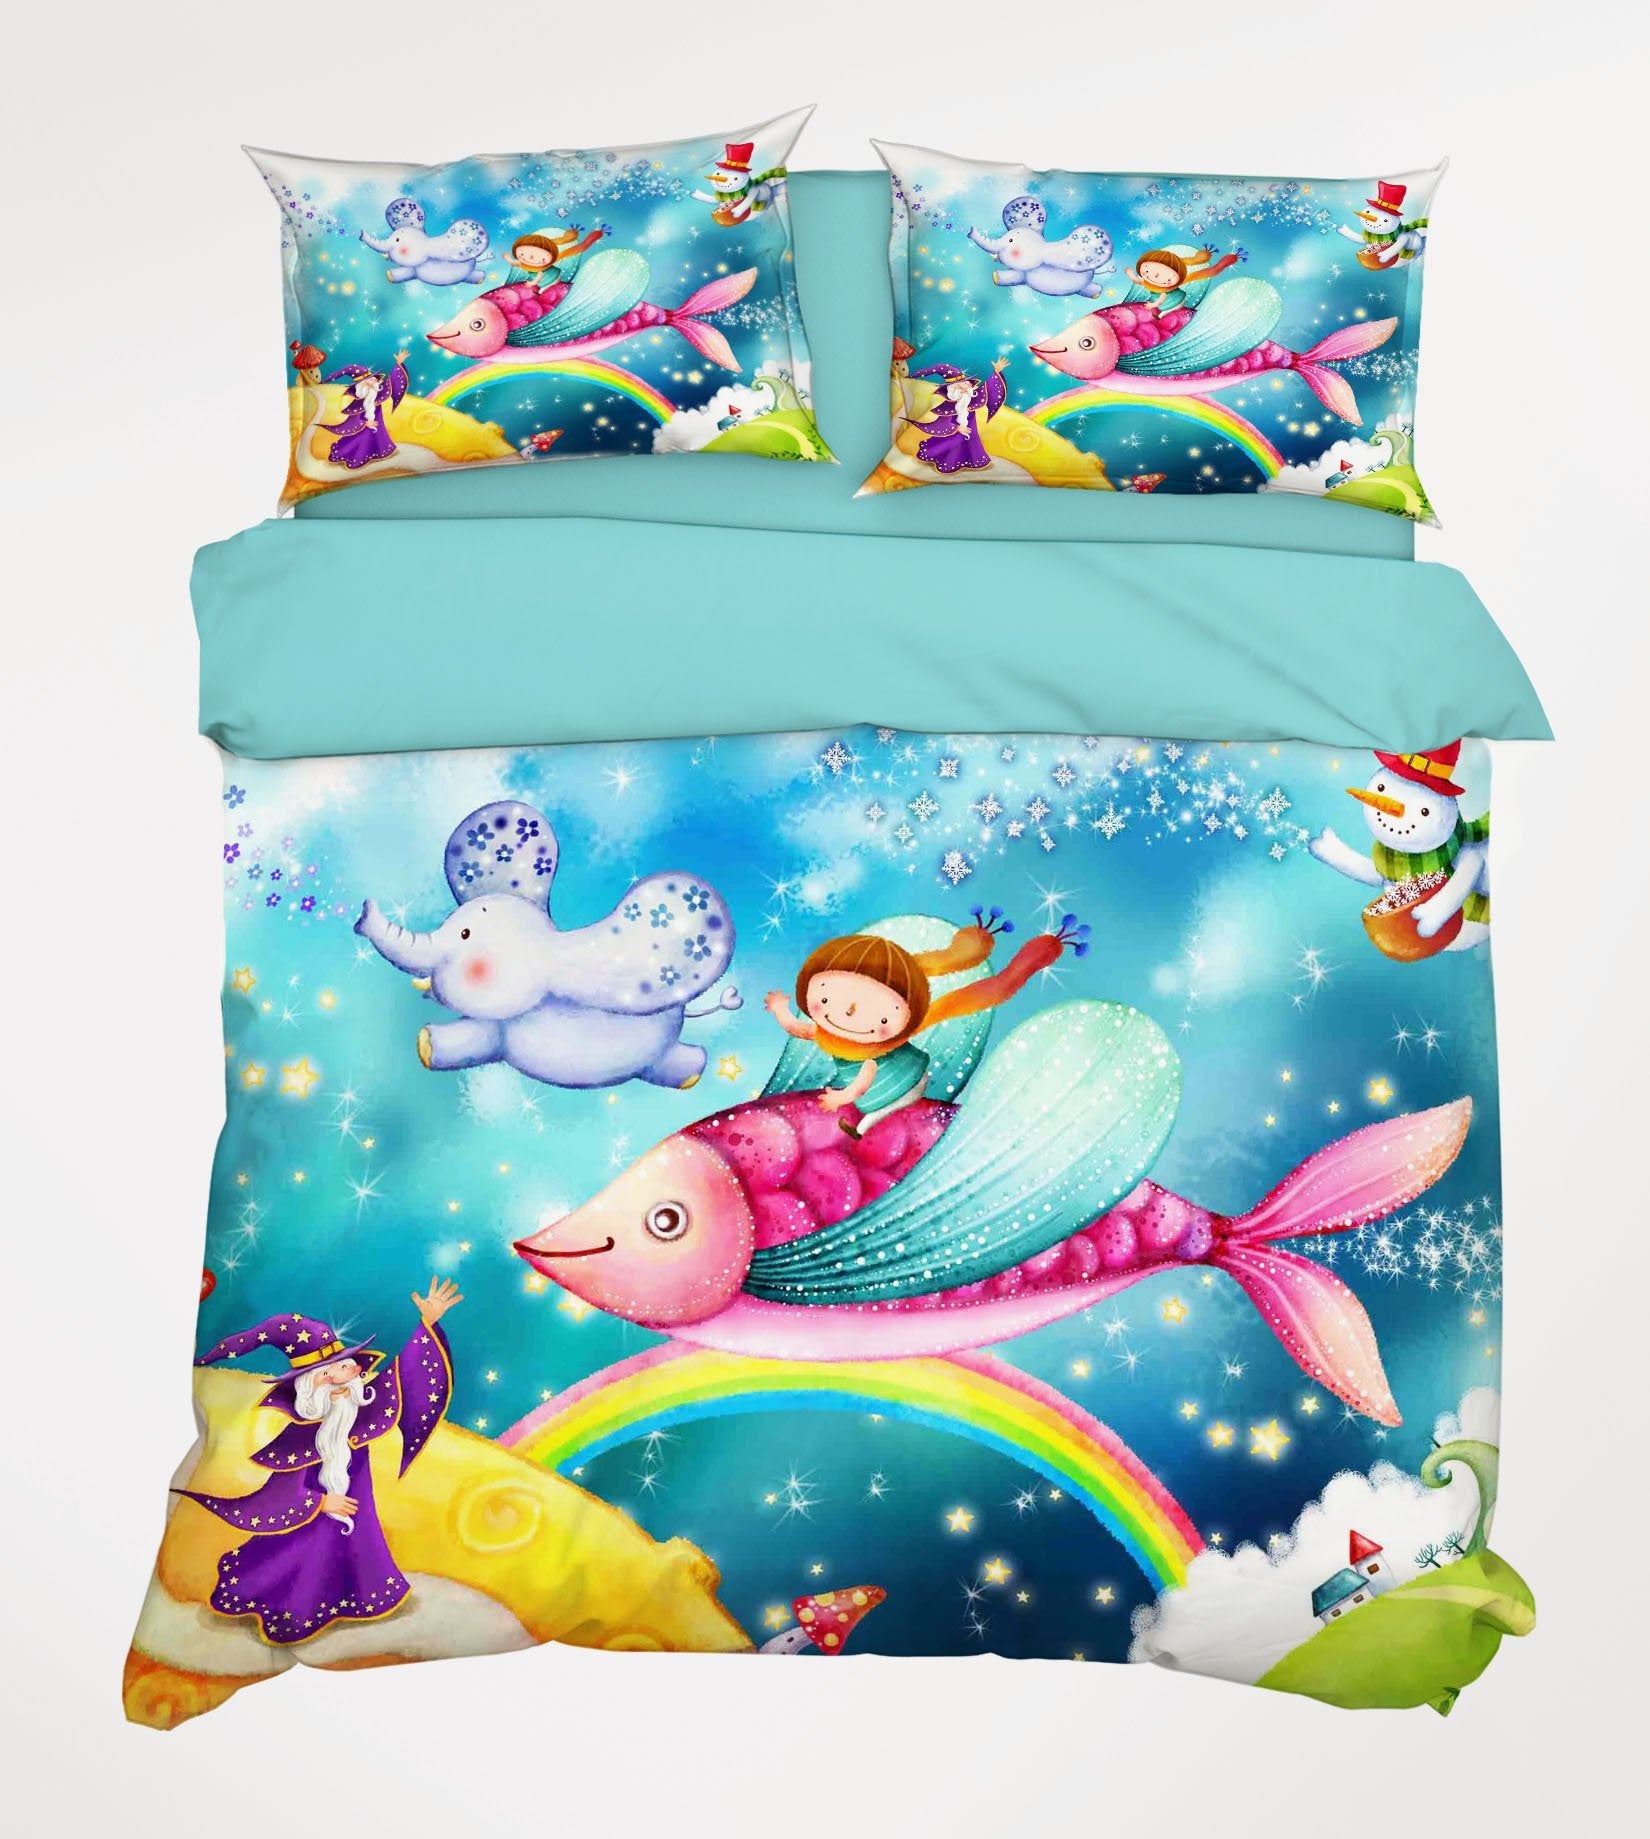 3D Magic Dreamland 335 Bed Pillowcases Quilt Wallpaper AJ Wallpaper 